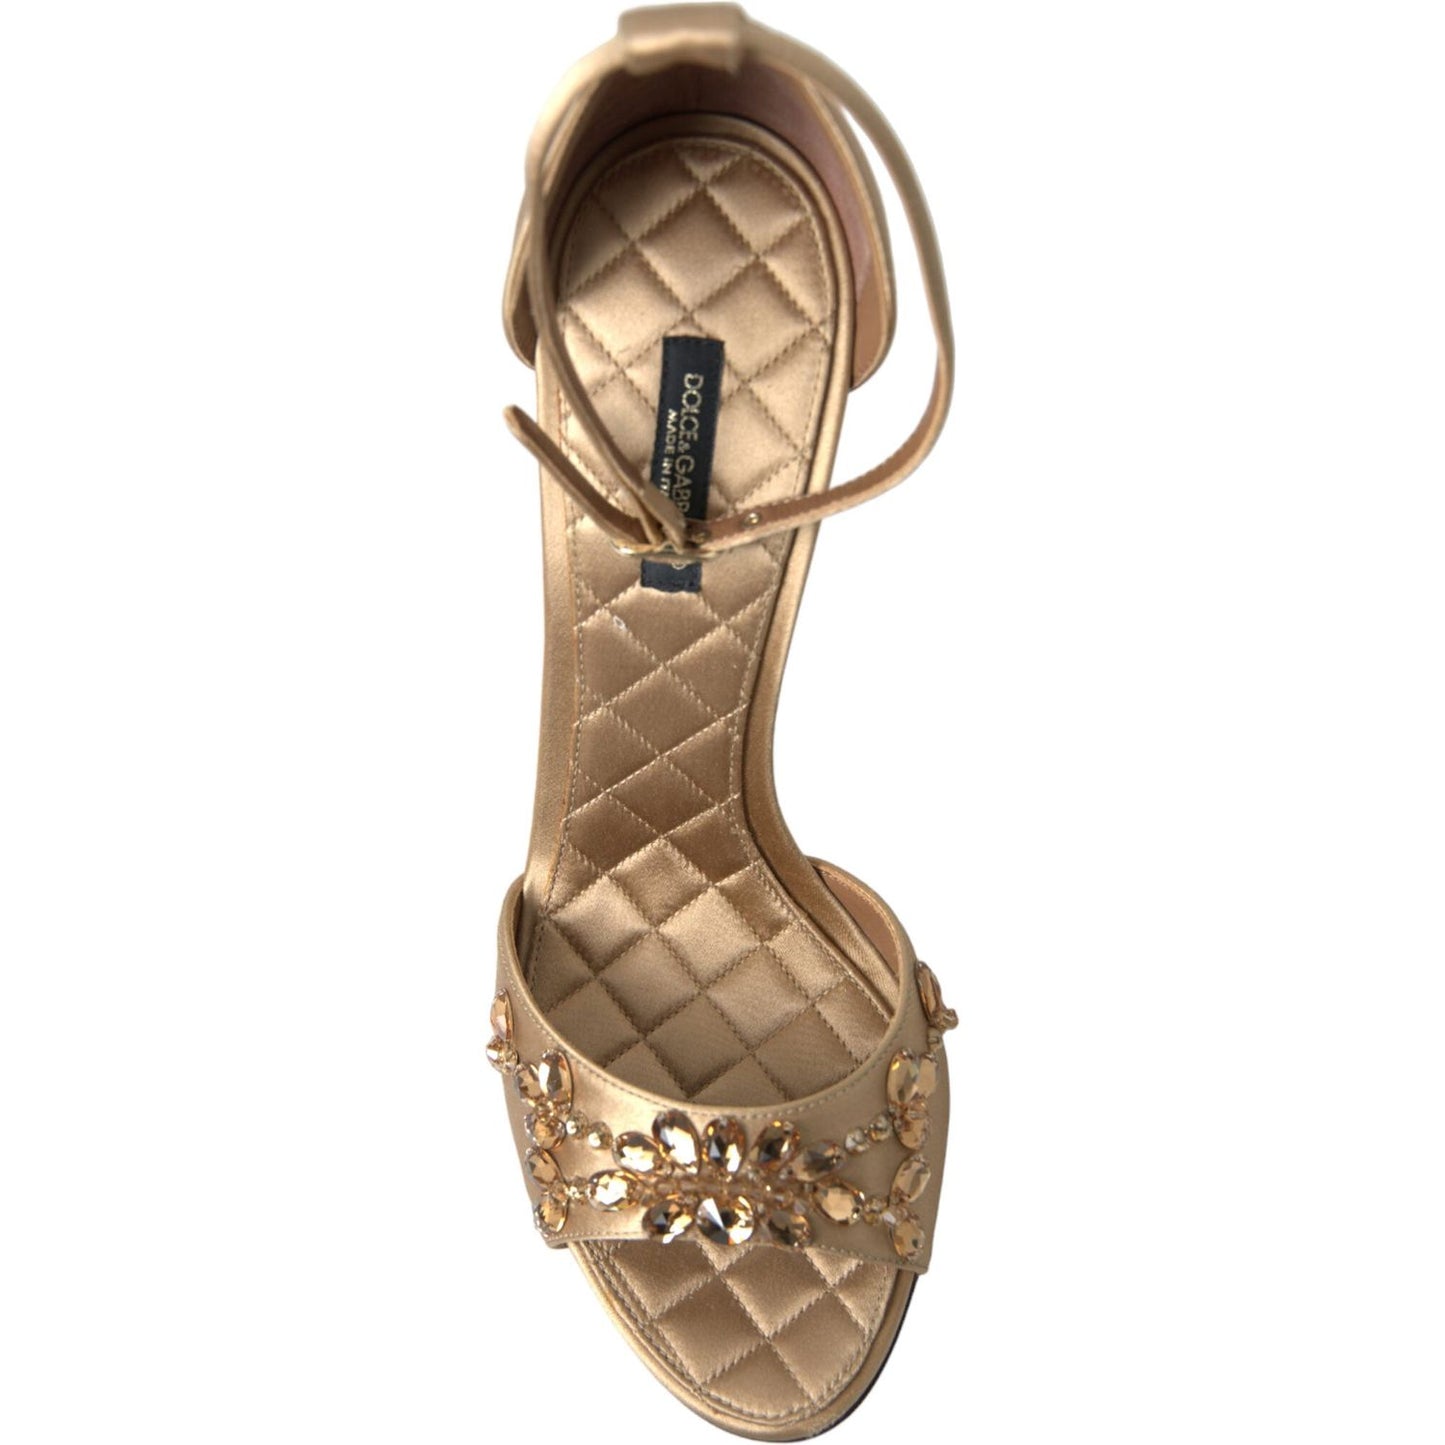 Dolce & Gabbana Crystal Embellished Heel Sandals gold-satin-ankle-strap-crystal-sandals-shoes 465A9649-bg-scaled-a01f0481-6c5.jpg